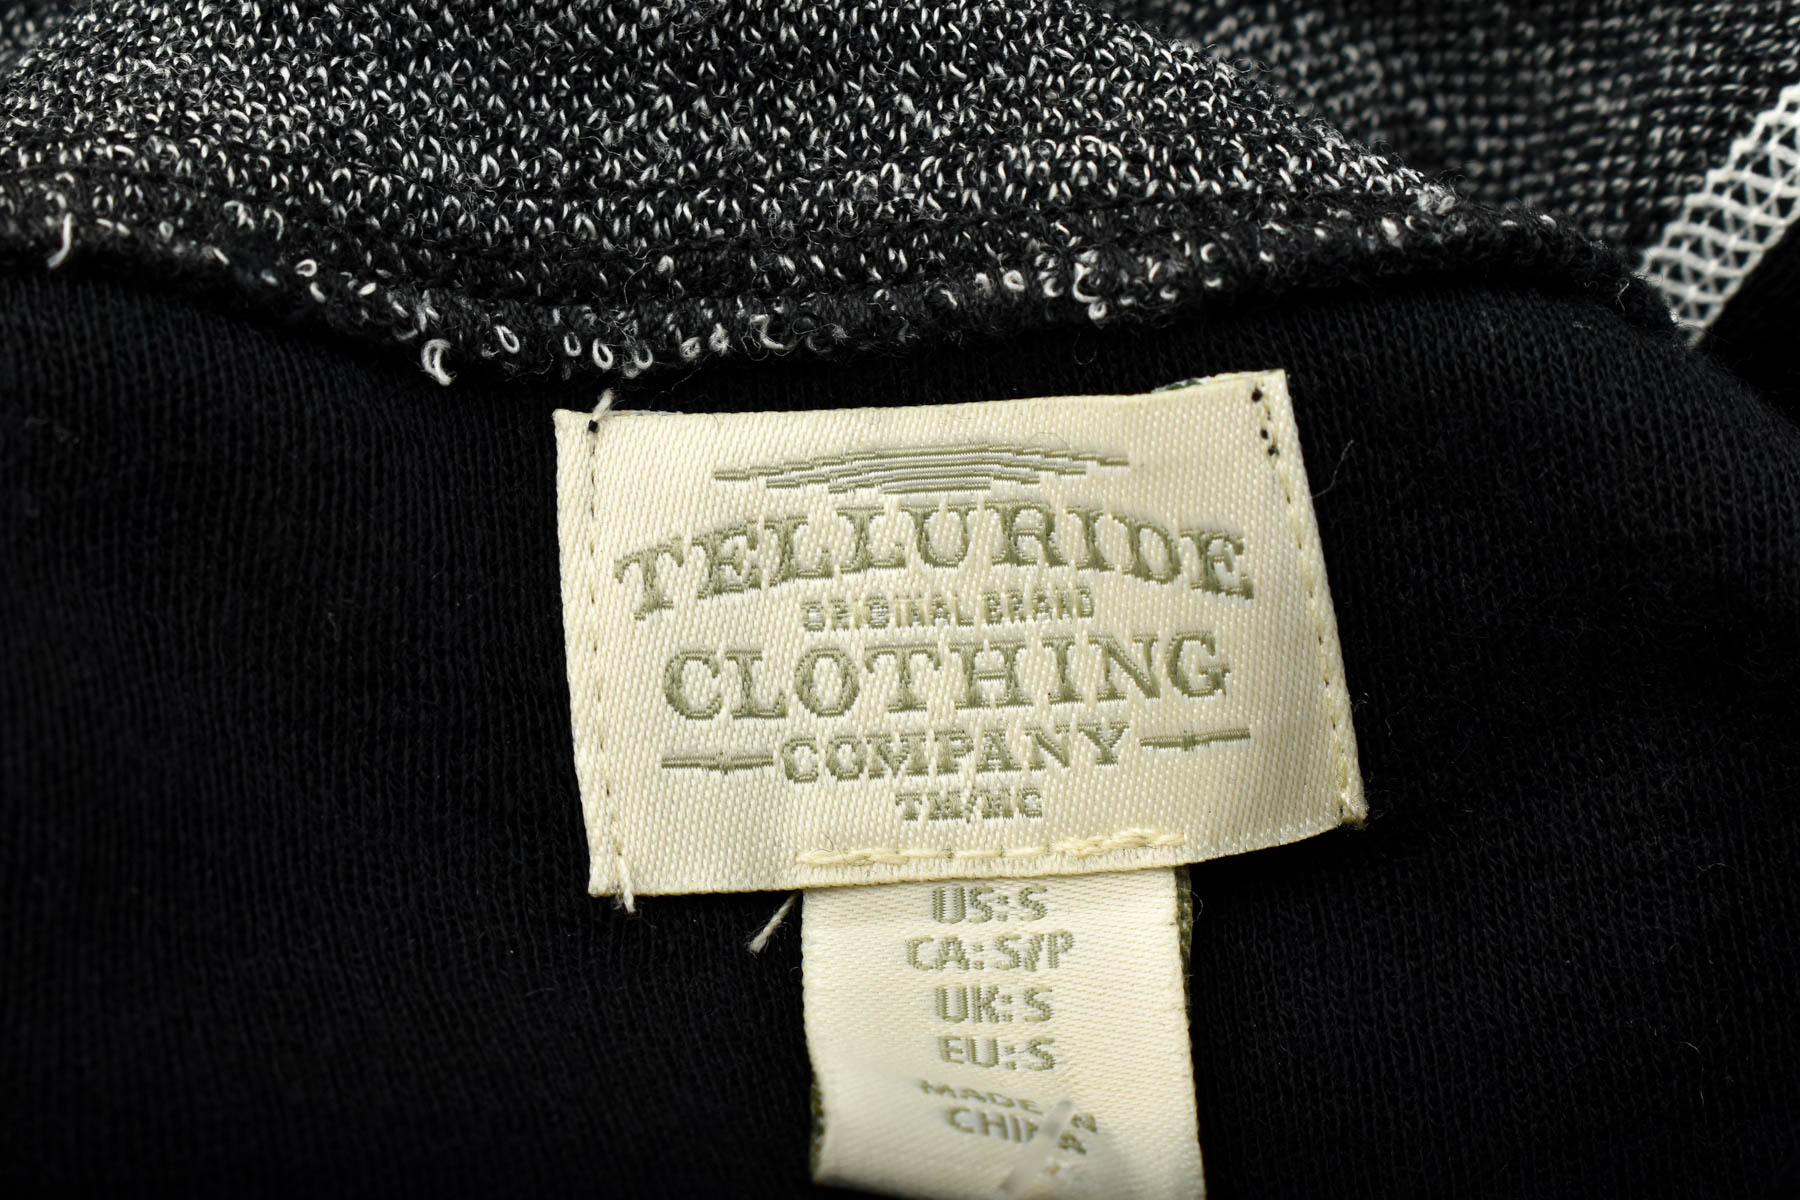 Damska bluza sportowa - Telluride Clothing Company - 2